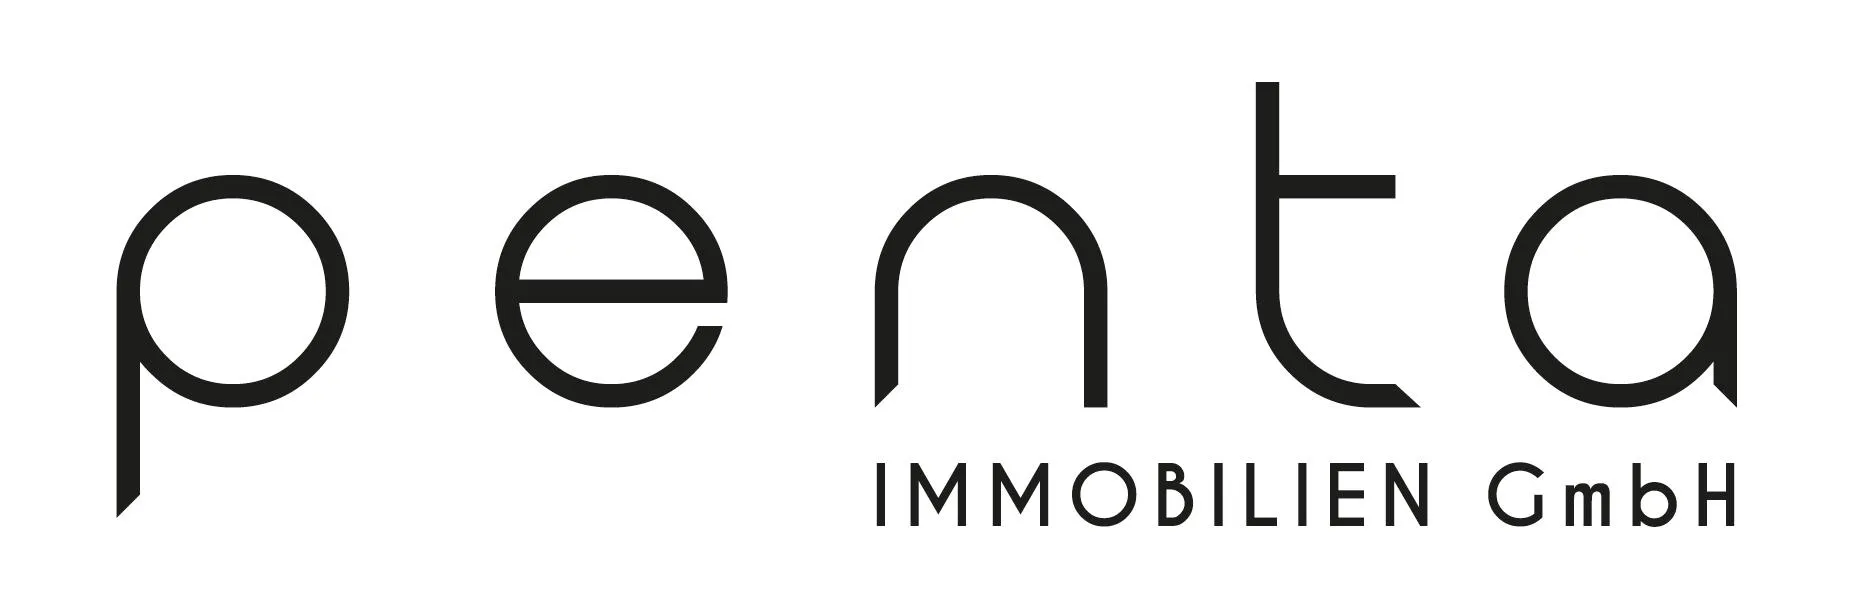 Makler Penta Immobilien GmbH logo